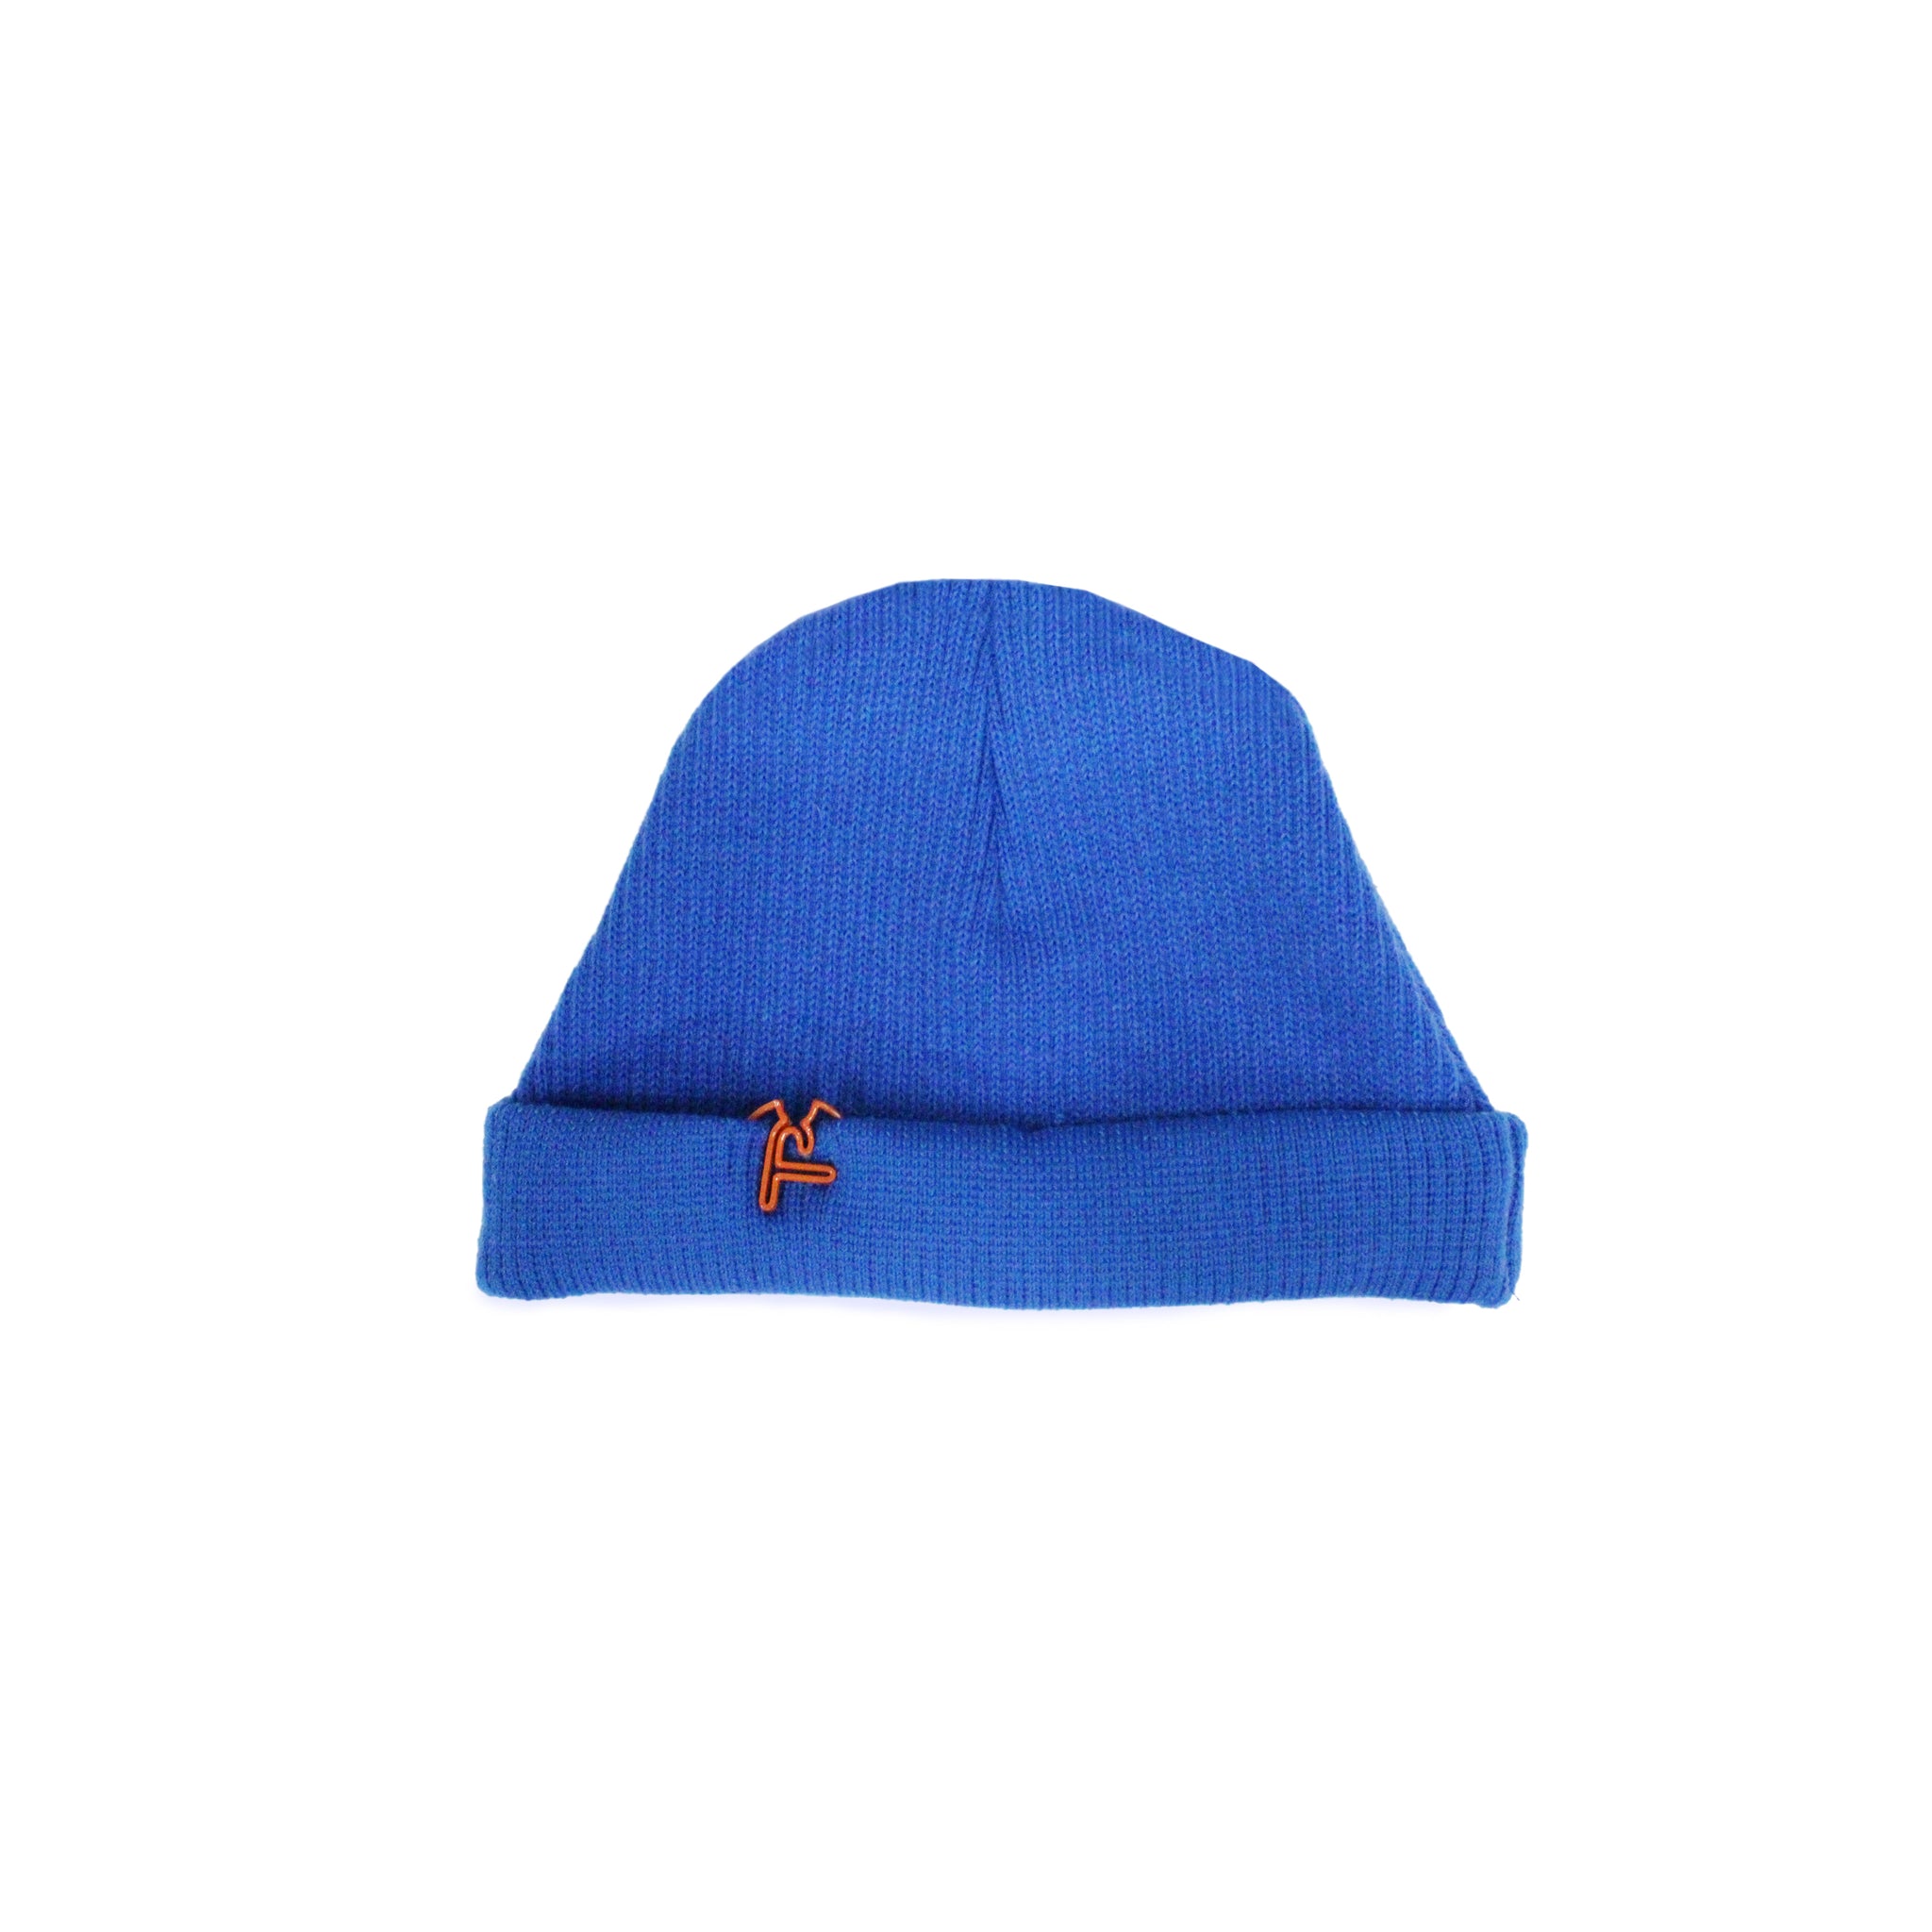 TPX - bonnet - bleu de france